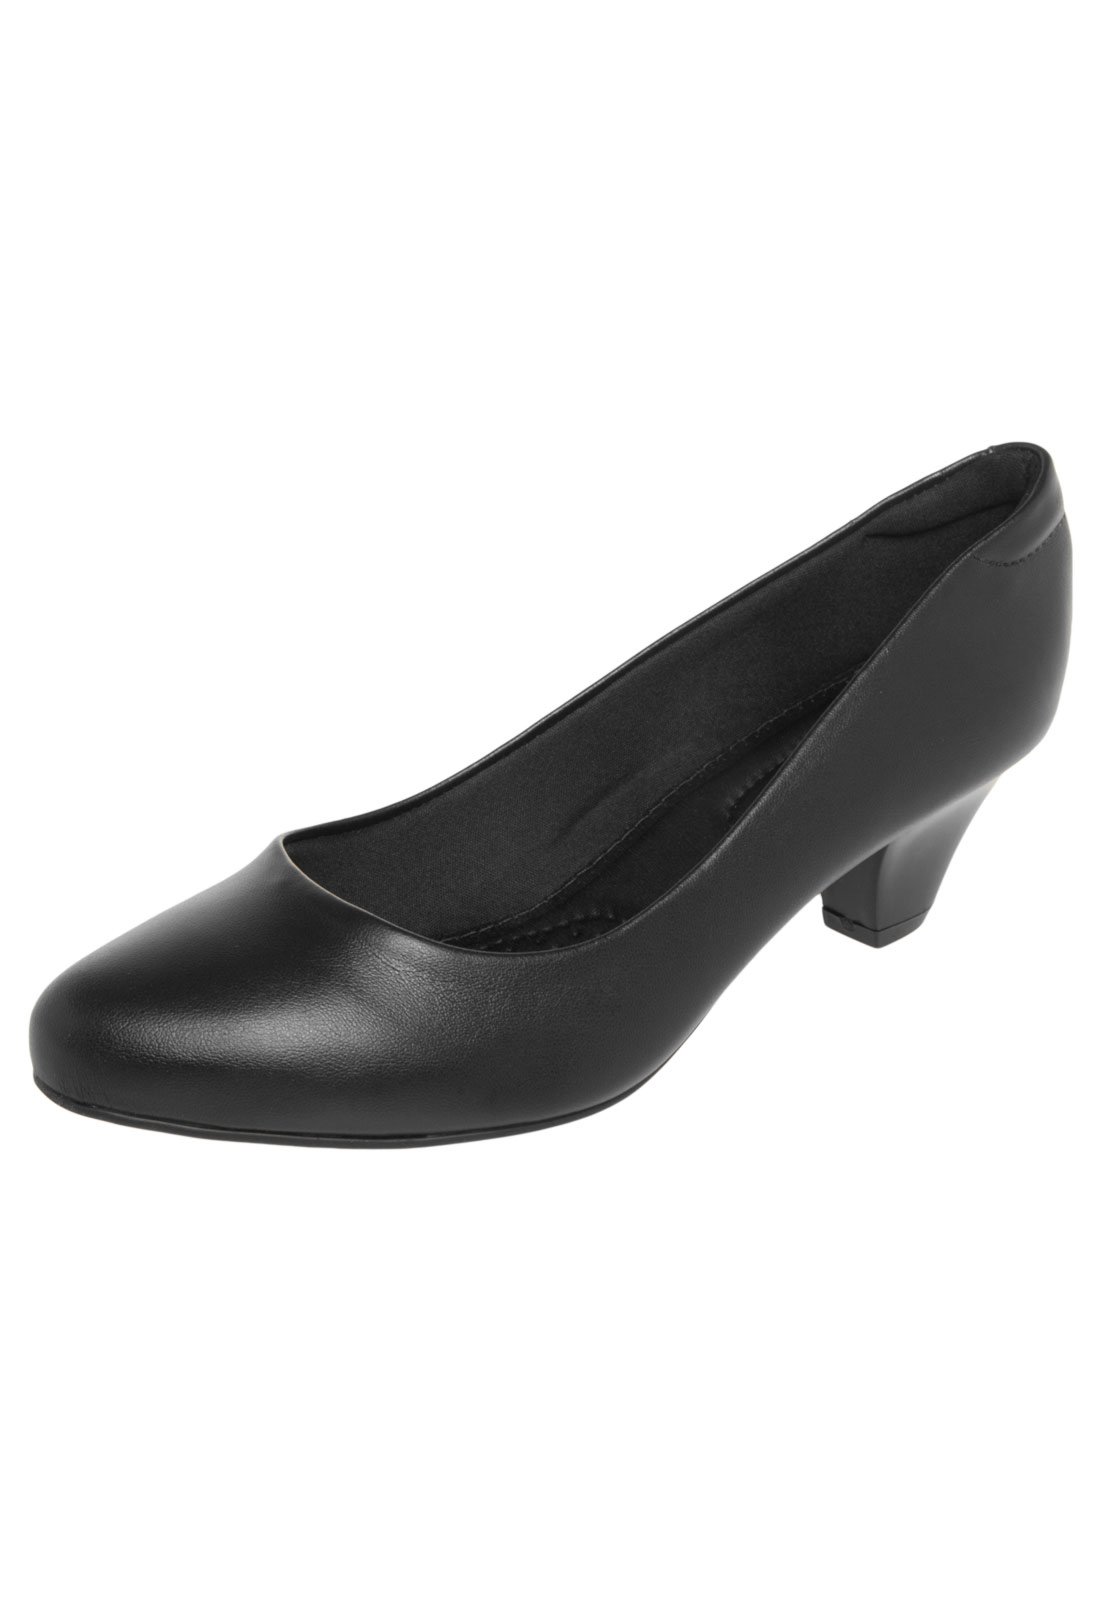 sapato feminino preto liso